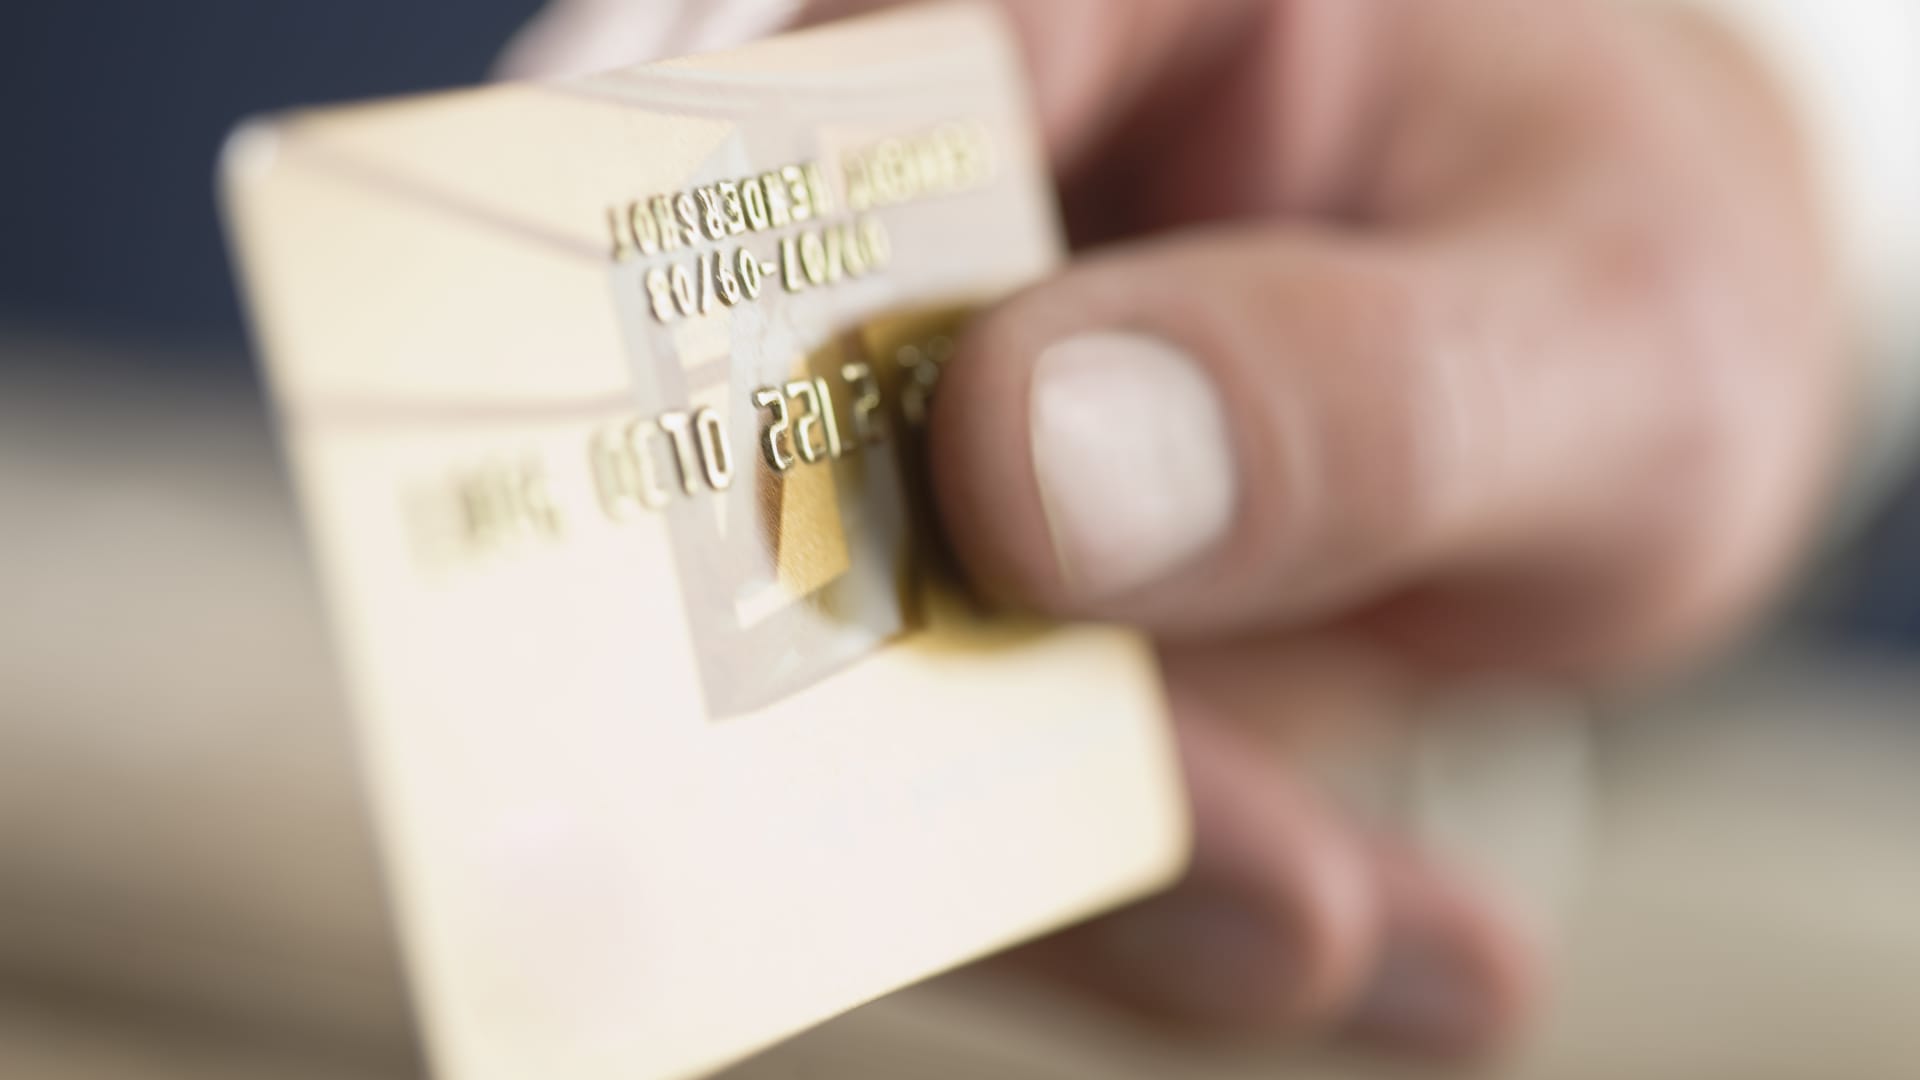 Fraudsters target elite credit cards twice as often